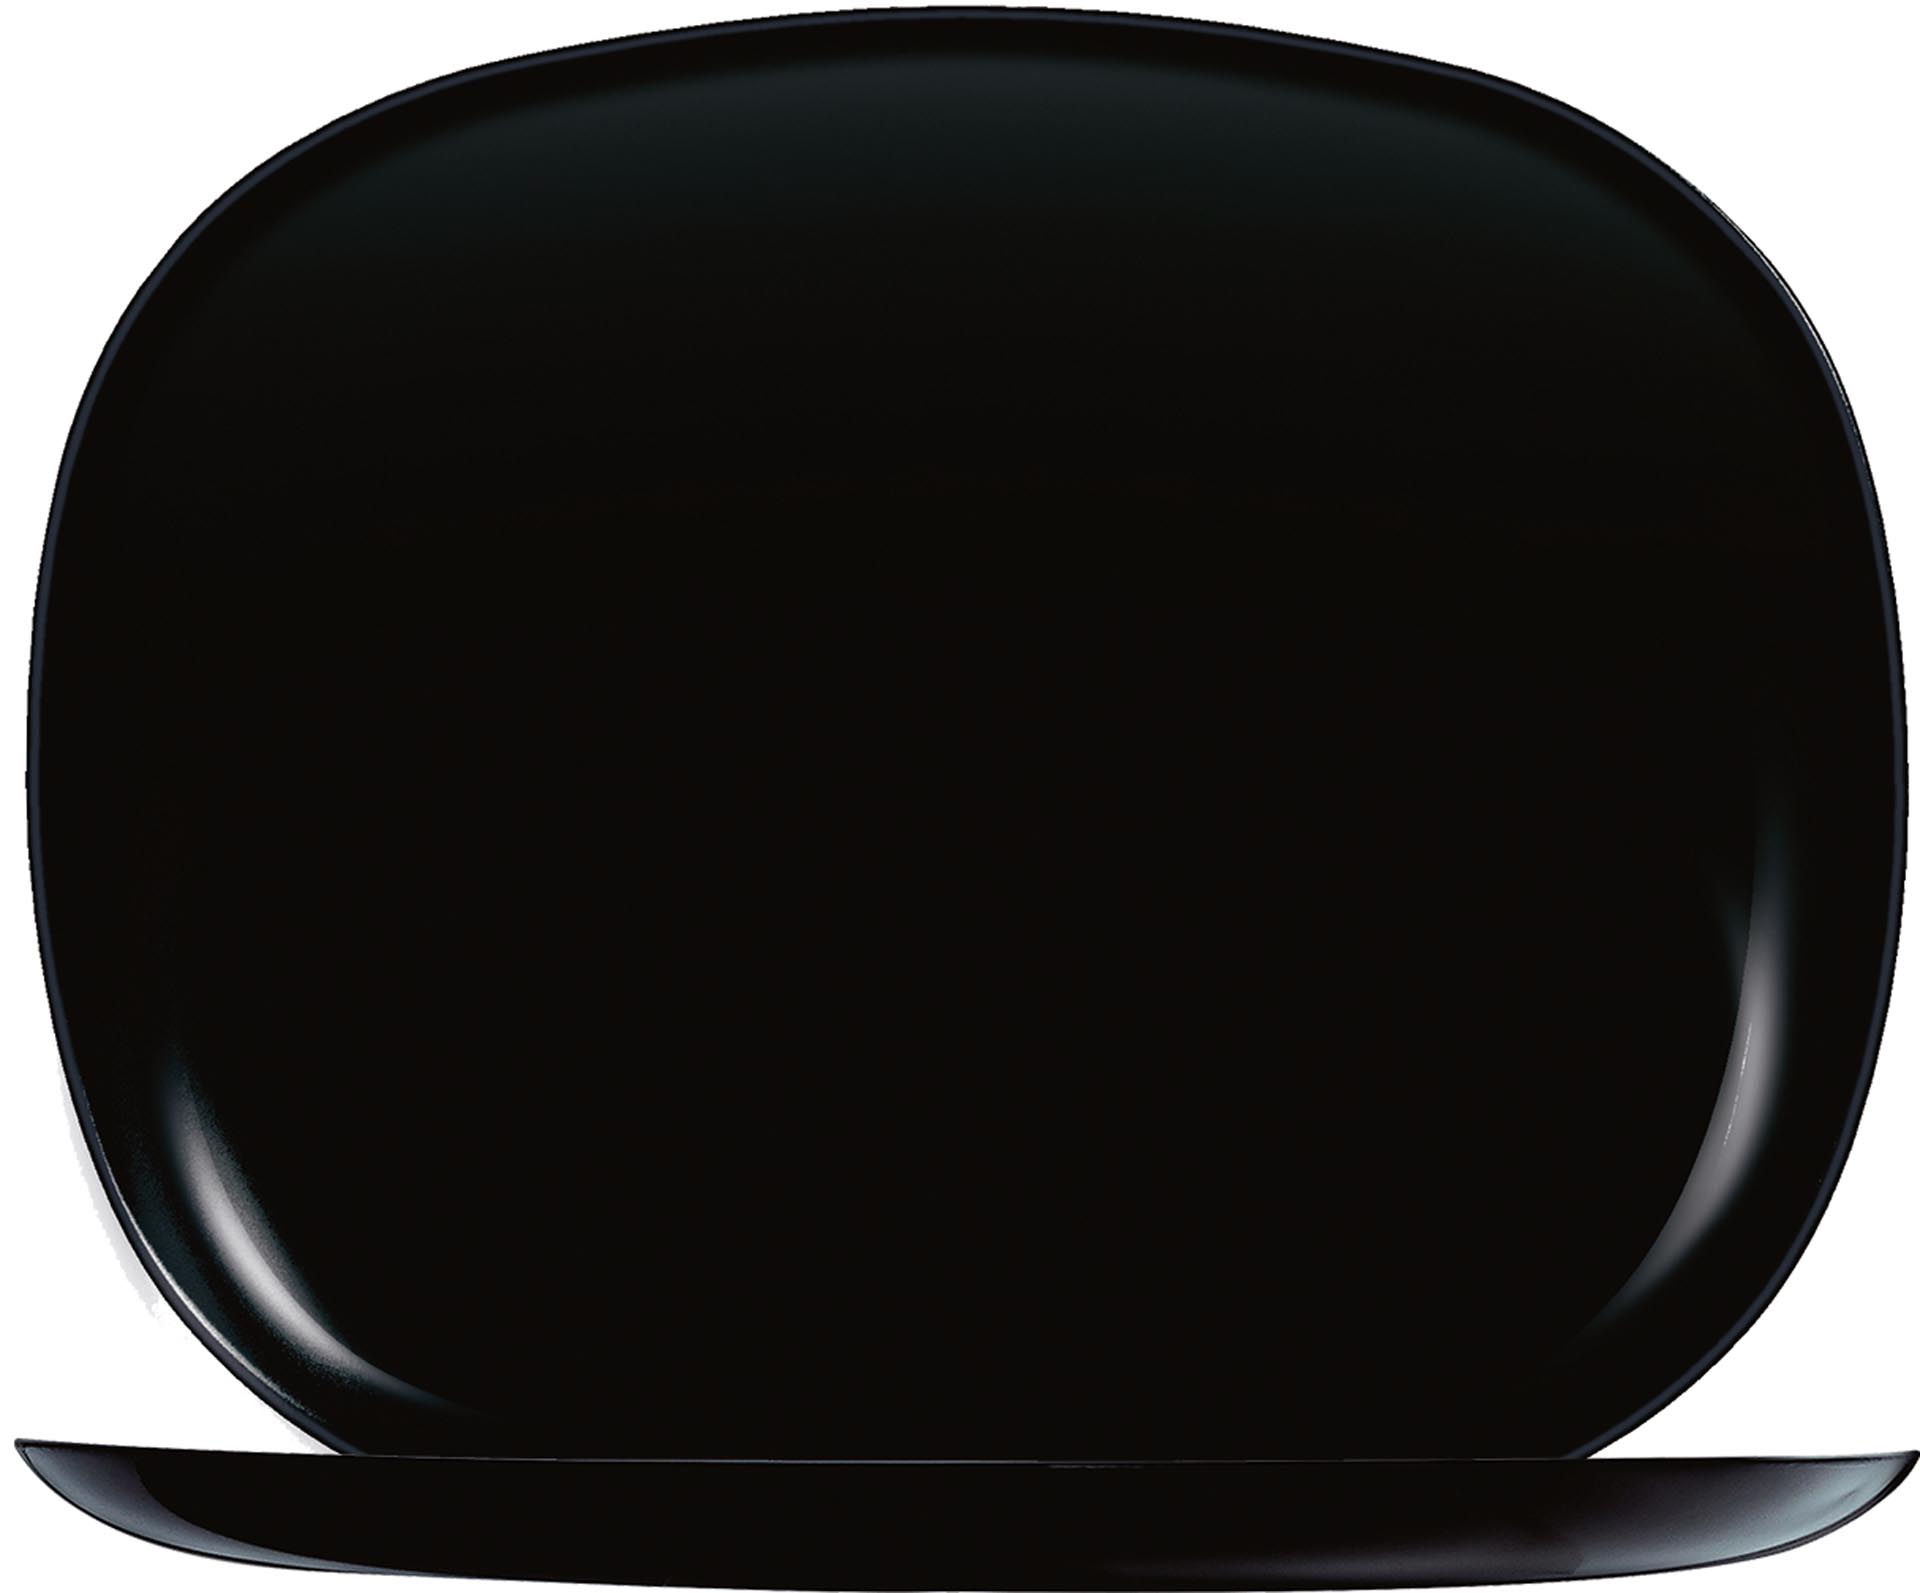 Hartglasgeschirr "Evolution" schwarz  Platte flach rechteckig 28x23 cm